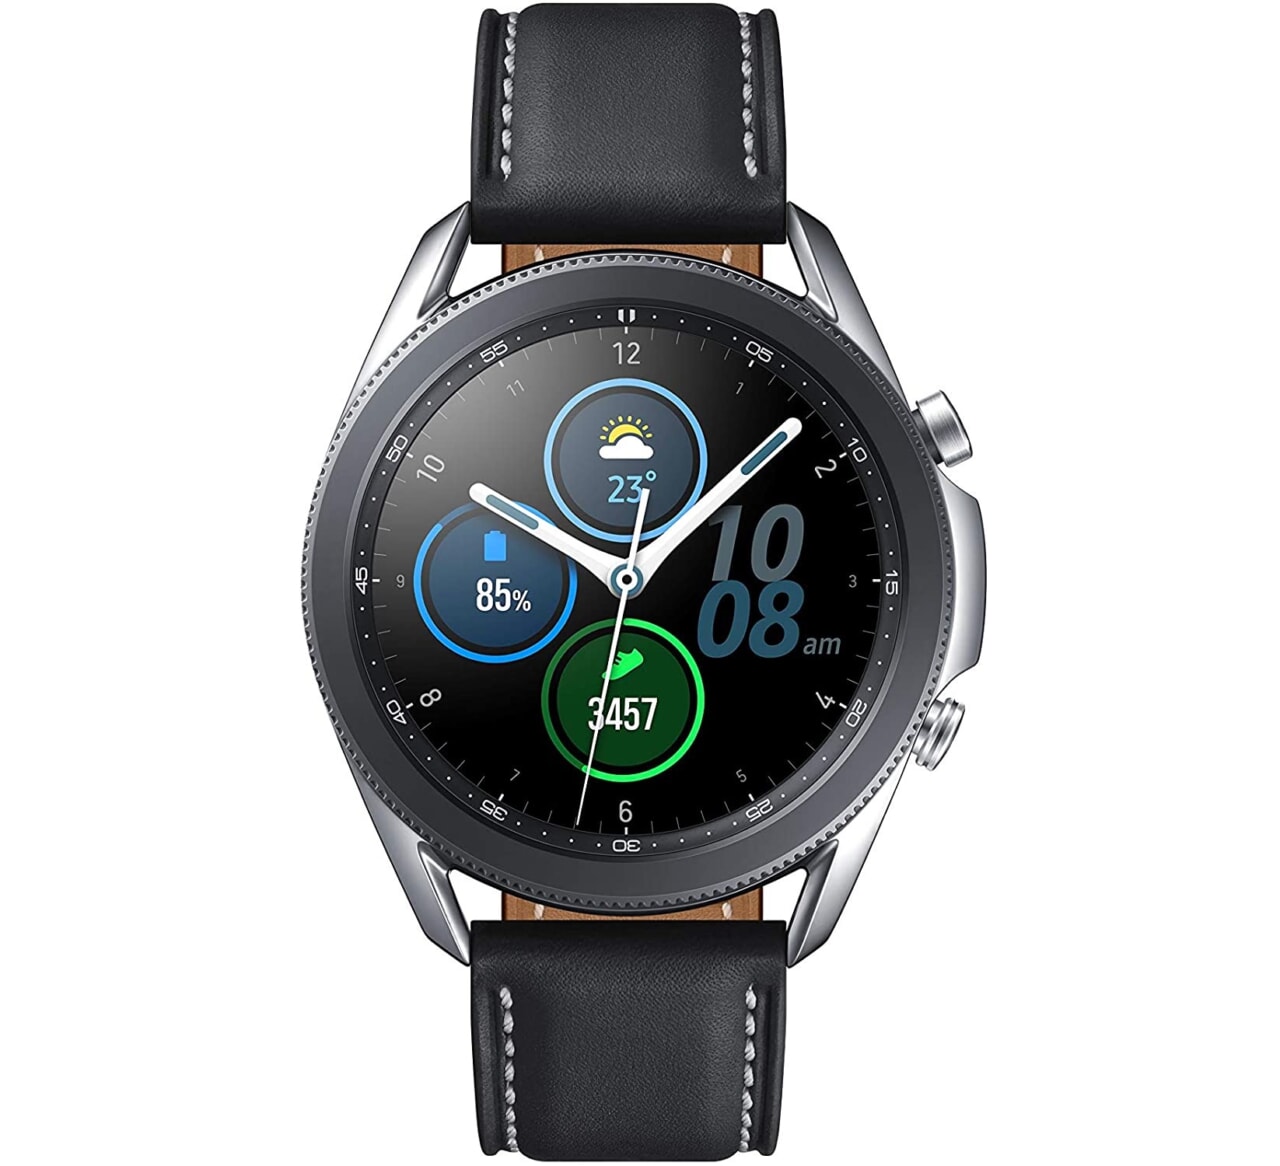 AmazonでGalaxy Watch3が5,000円割引、チタンモデルは7,000円割引